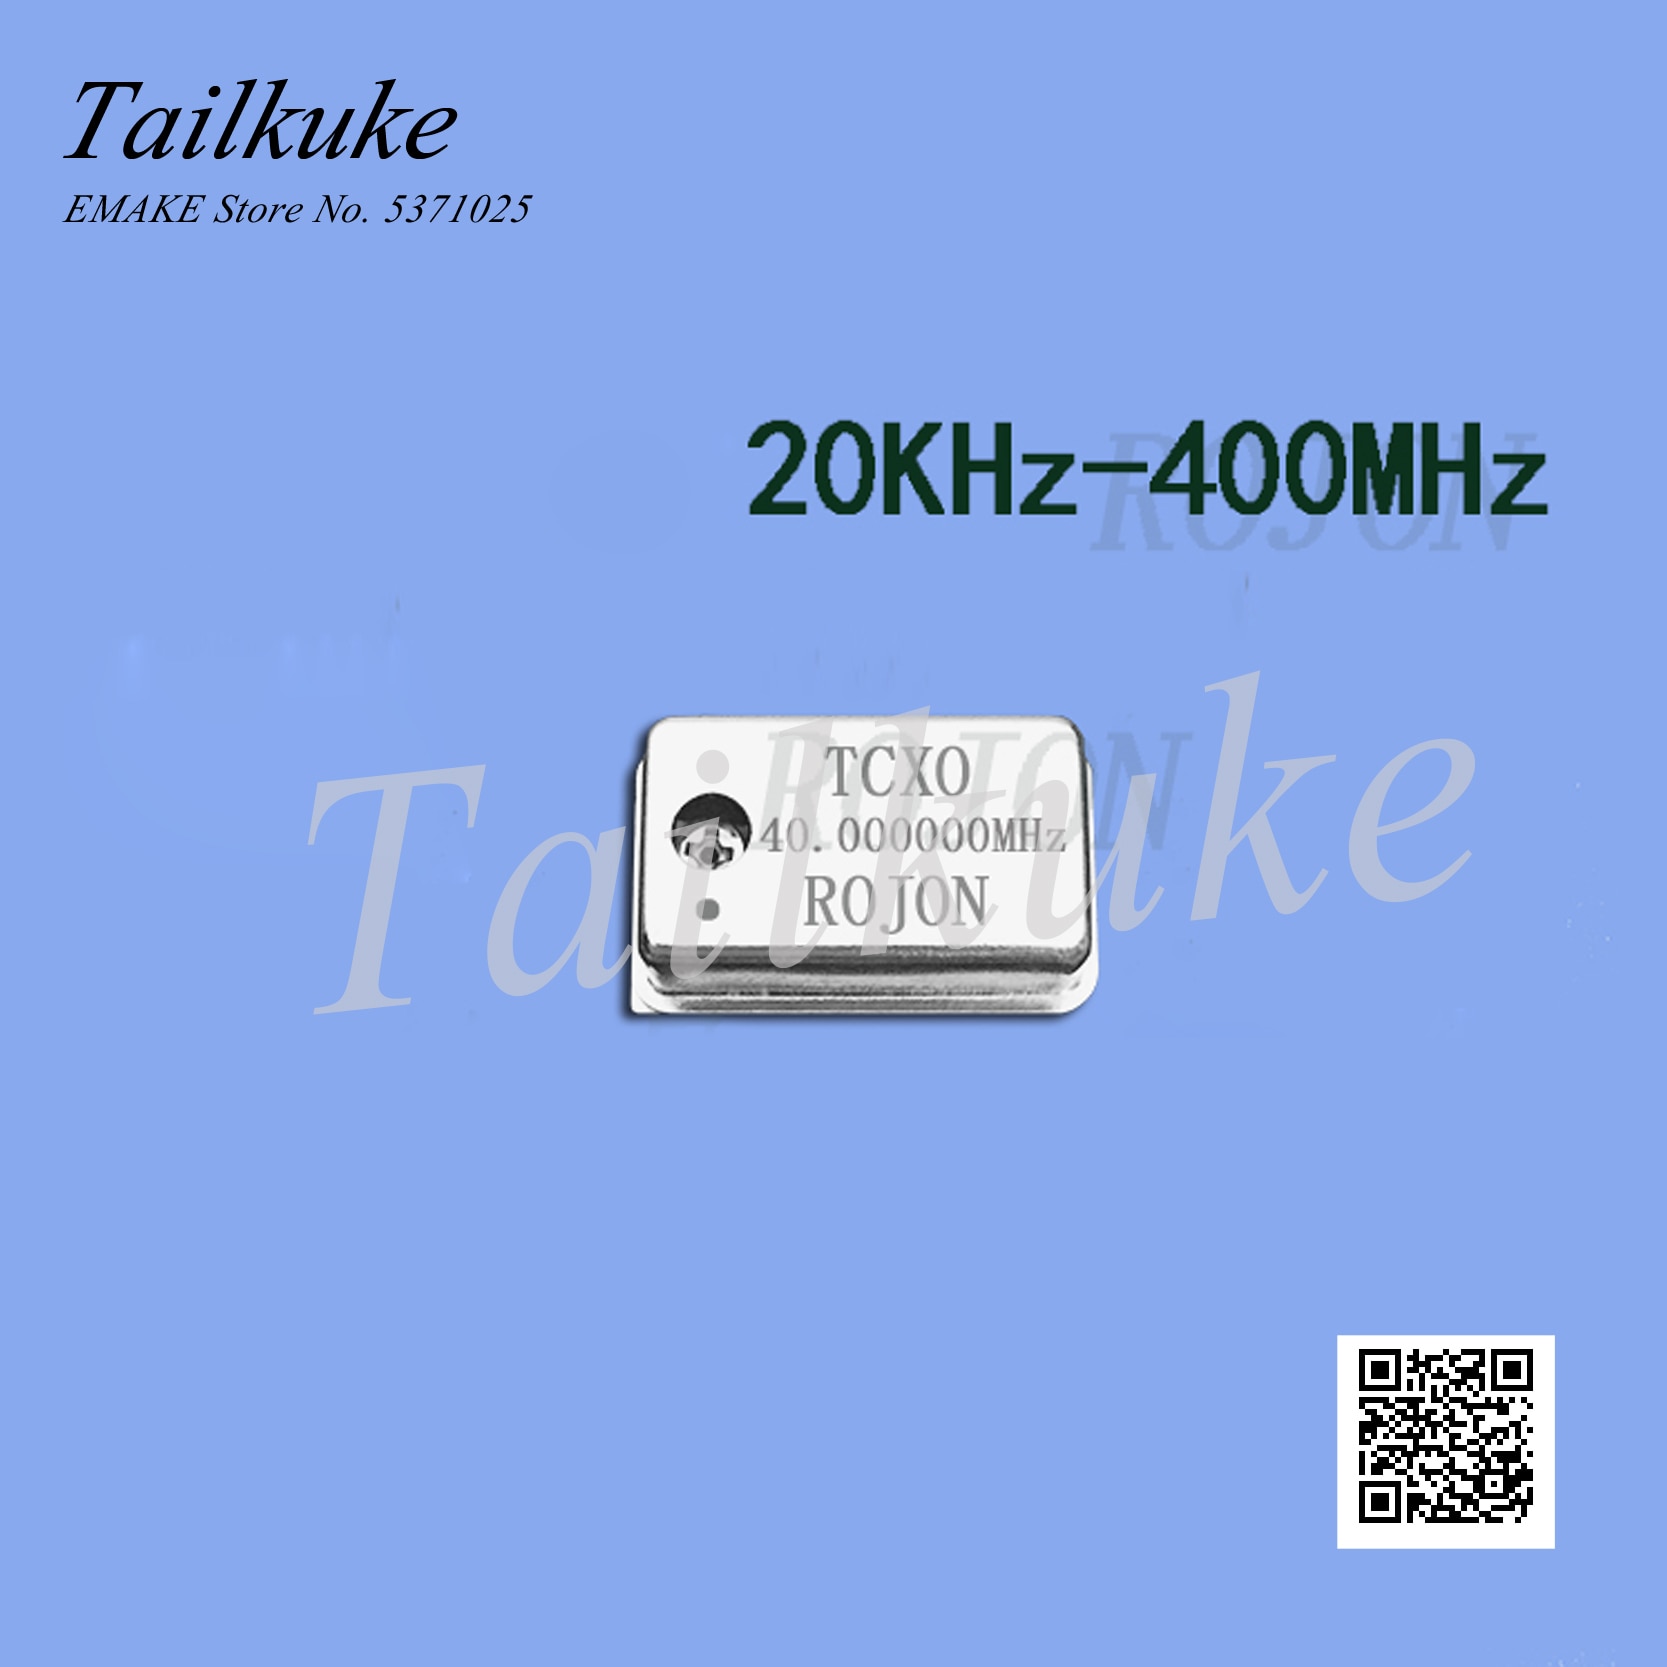 10 mhz høj præcision temperaturkompenseret krystaloscillator tcxo 0.1 ppm kalibreringsfrekvens standard kalibreringsfrekvens